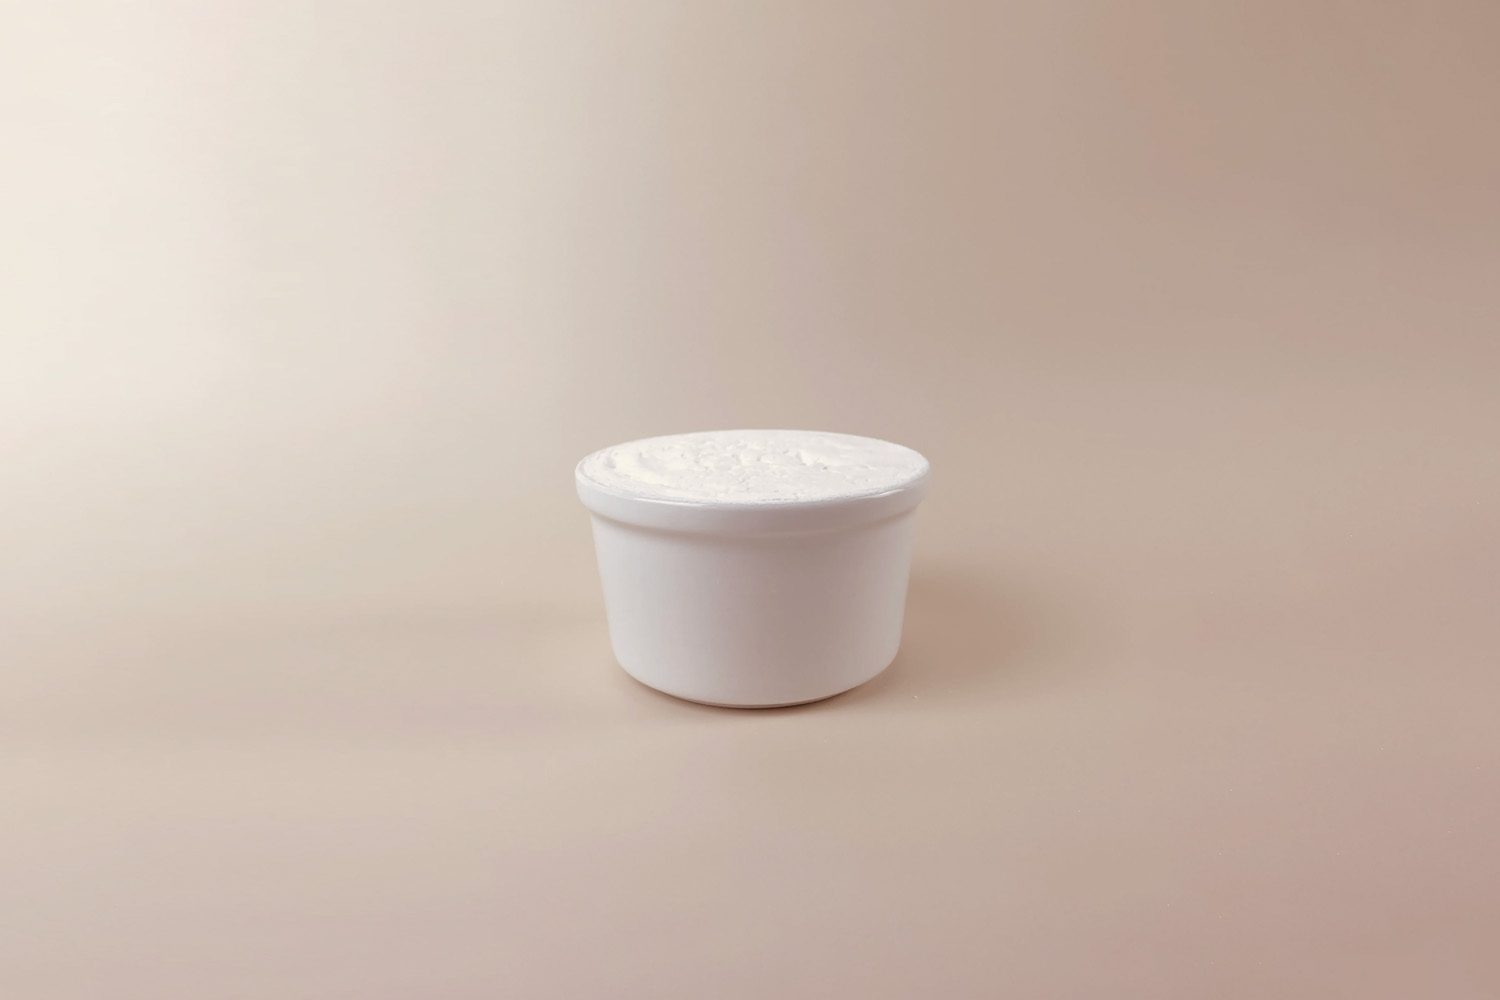 Dish Soap Round Porcelain Bowl